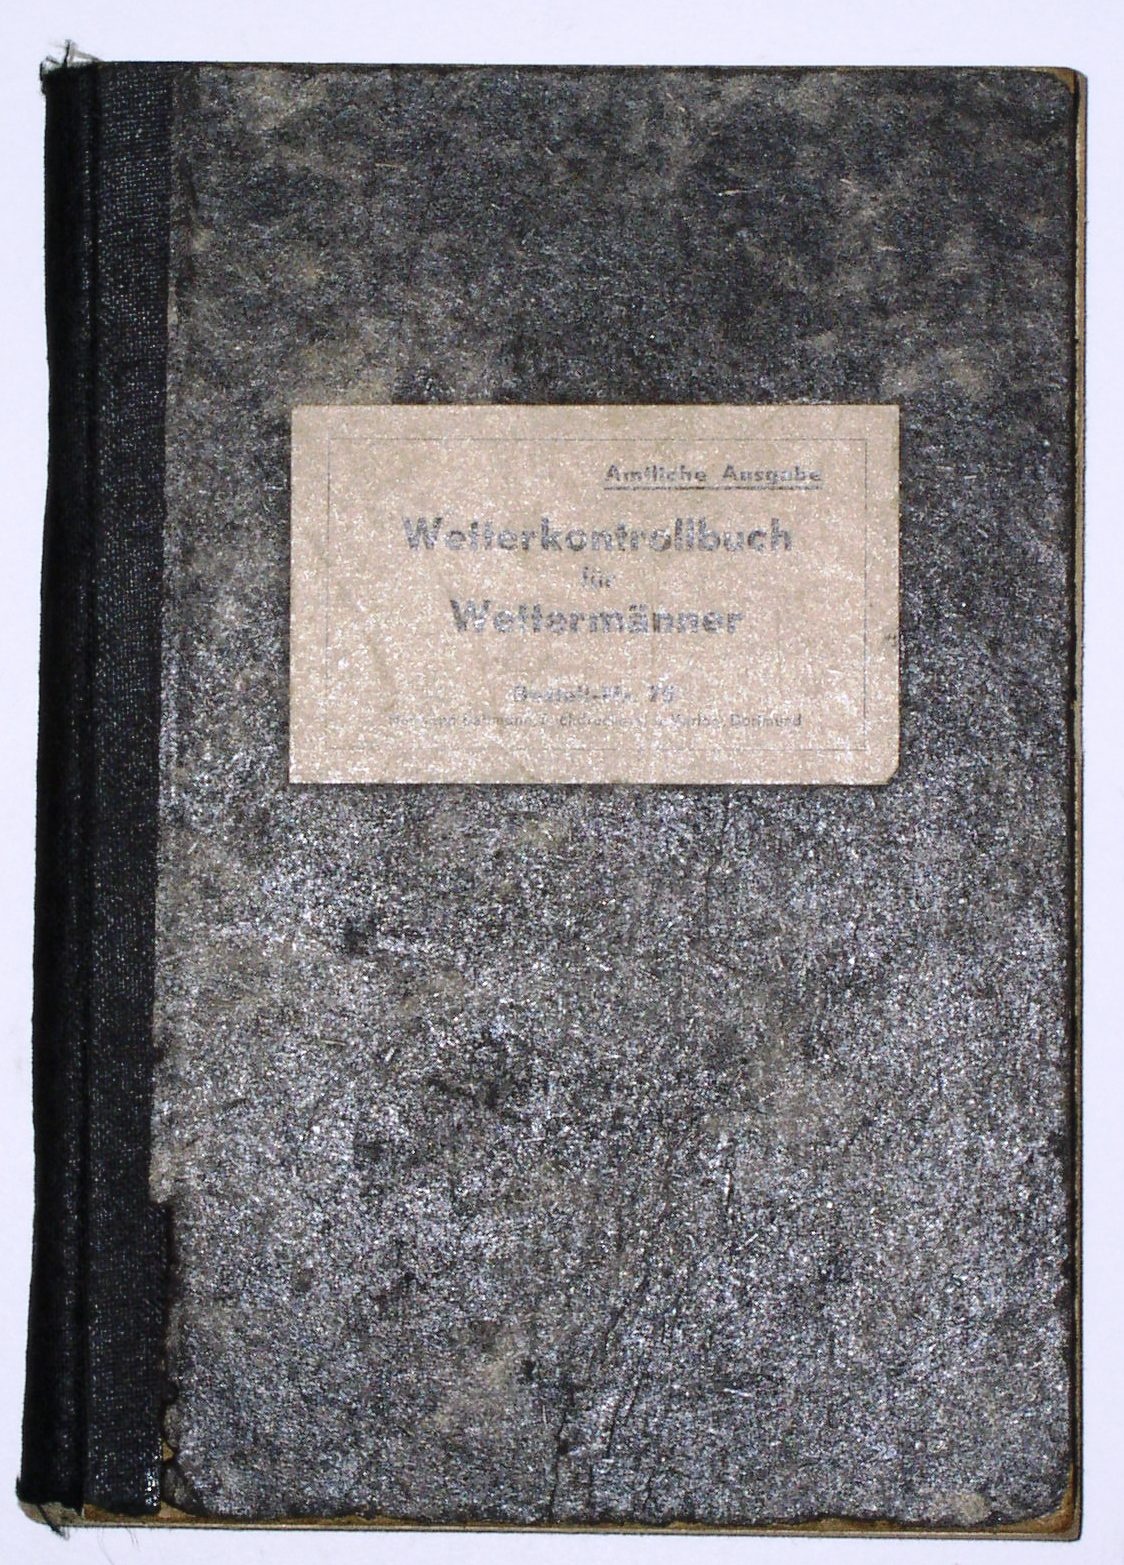 Wetterkontrollbuch (Hellweg-Museum Unna CC BY-NC-SA)